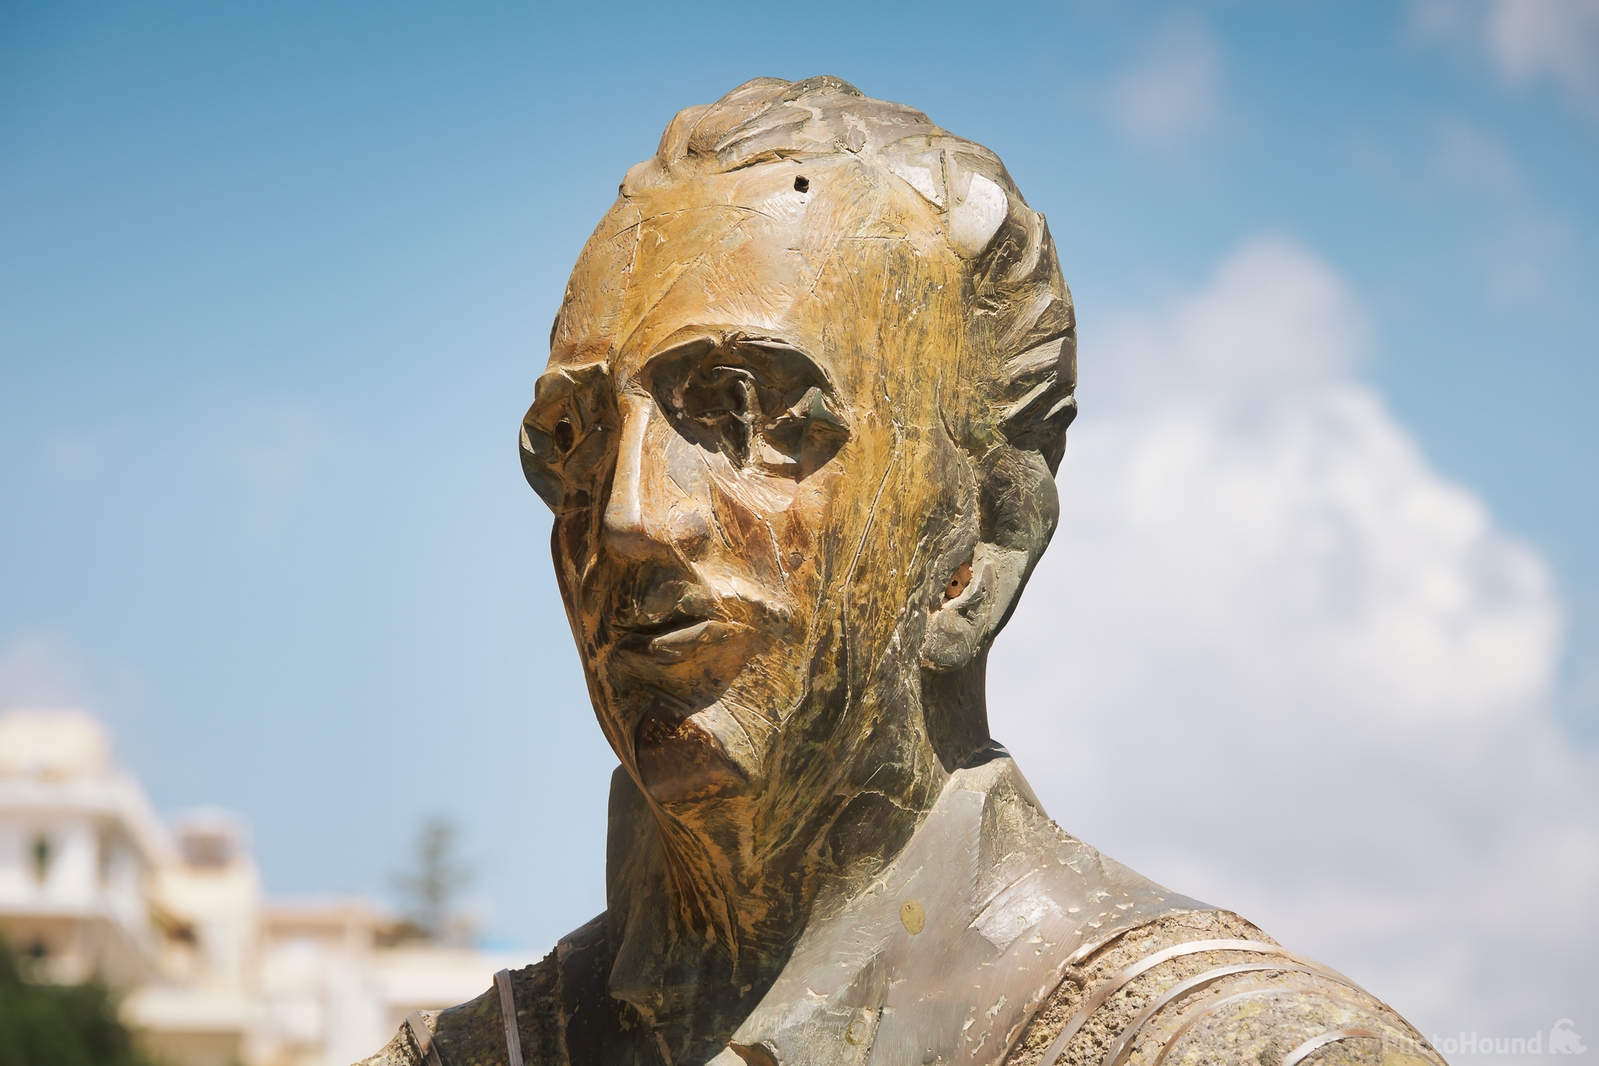 Image of Statue of Nikos Koundouros by Mathew Browne